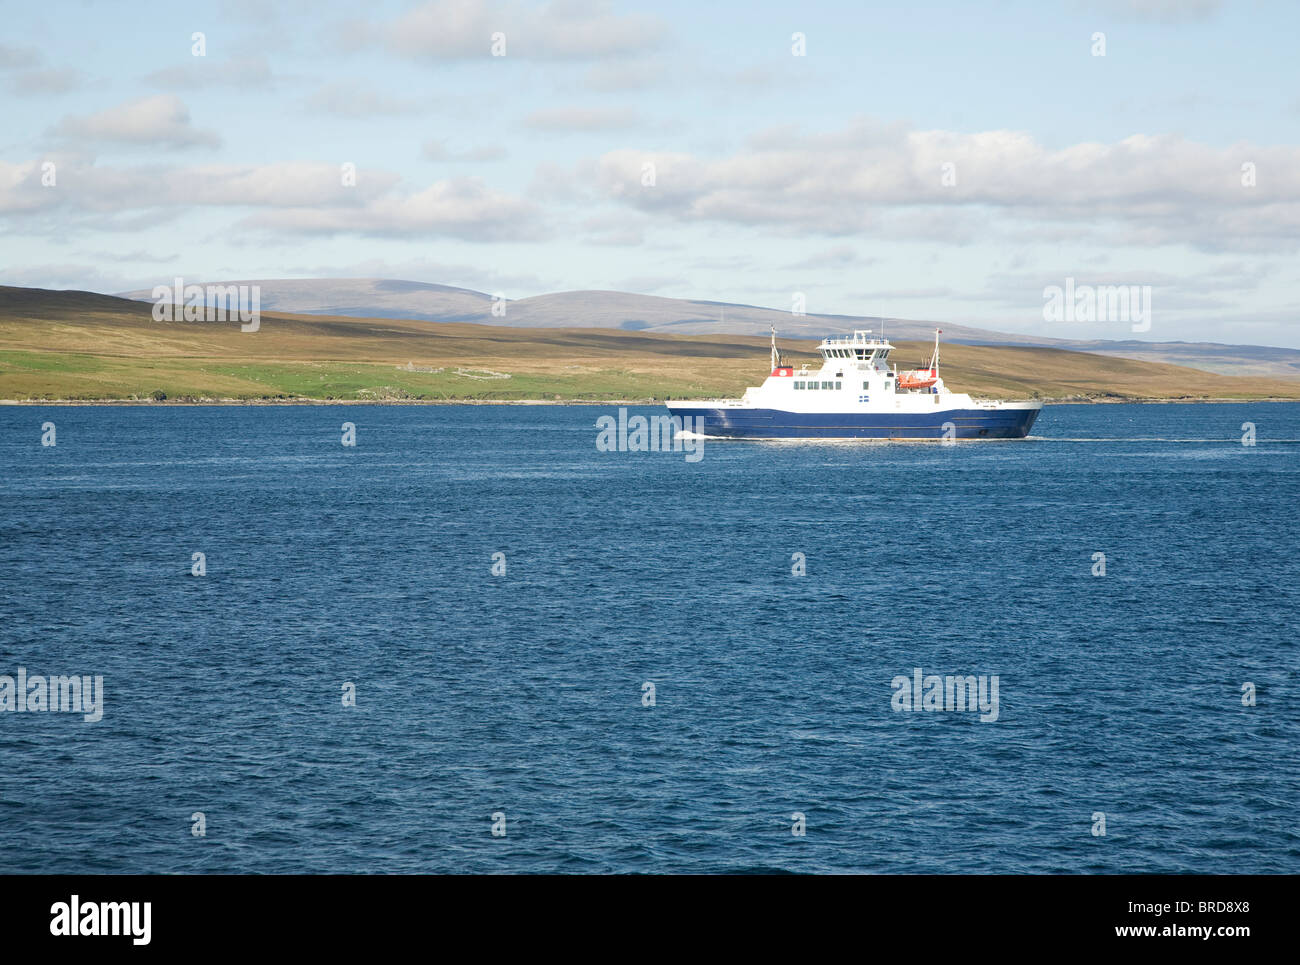 Fähre zwischen schreien und Festland, vorbei an Bigga Island, Shetland Inseln, Schottland Stockfoto